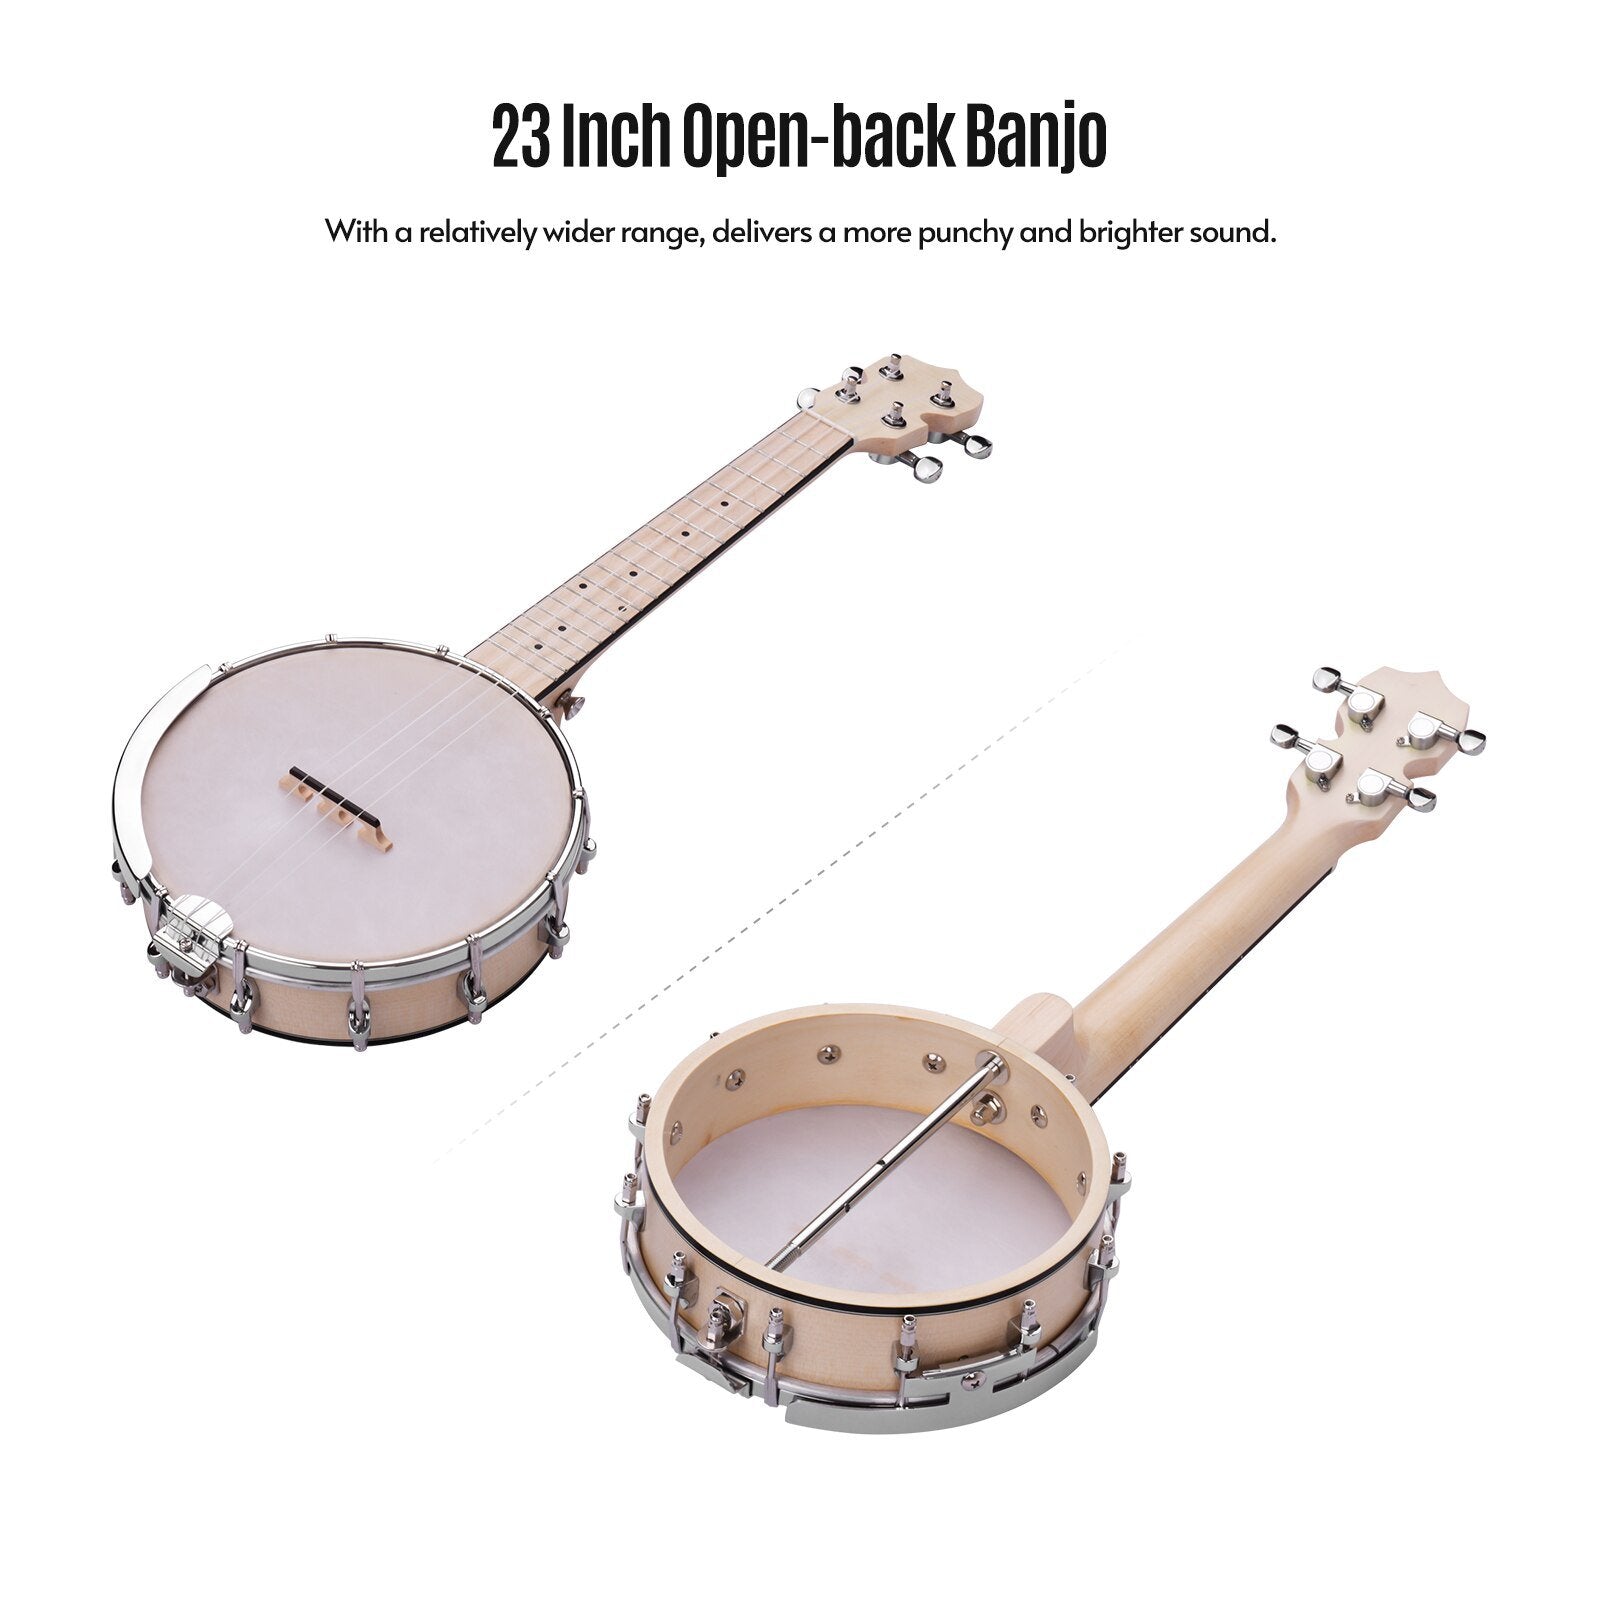 ammoon Concert 23 Inch Open-back Banjo Uke 4 String Banjolele Maple Body Okoume Neck with Tuning Wrench Bridge Positioning Ruler - AKLOT